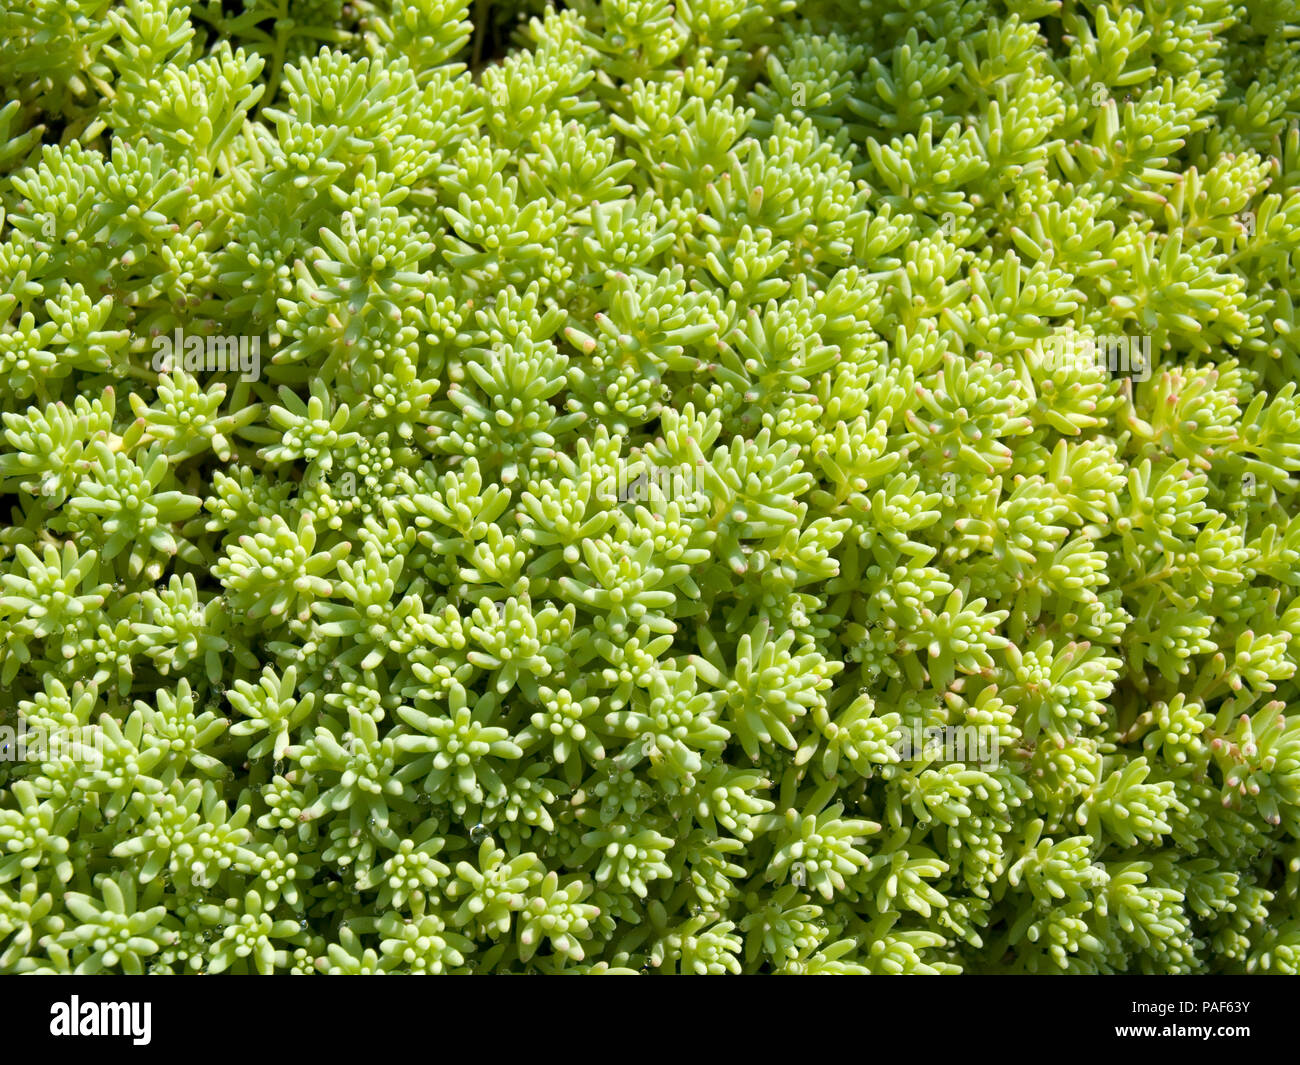 Sedum succulent ground-covering plant Stock Photo